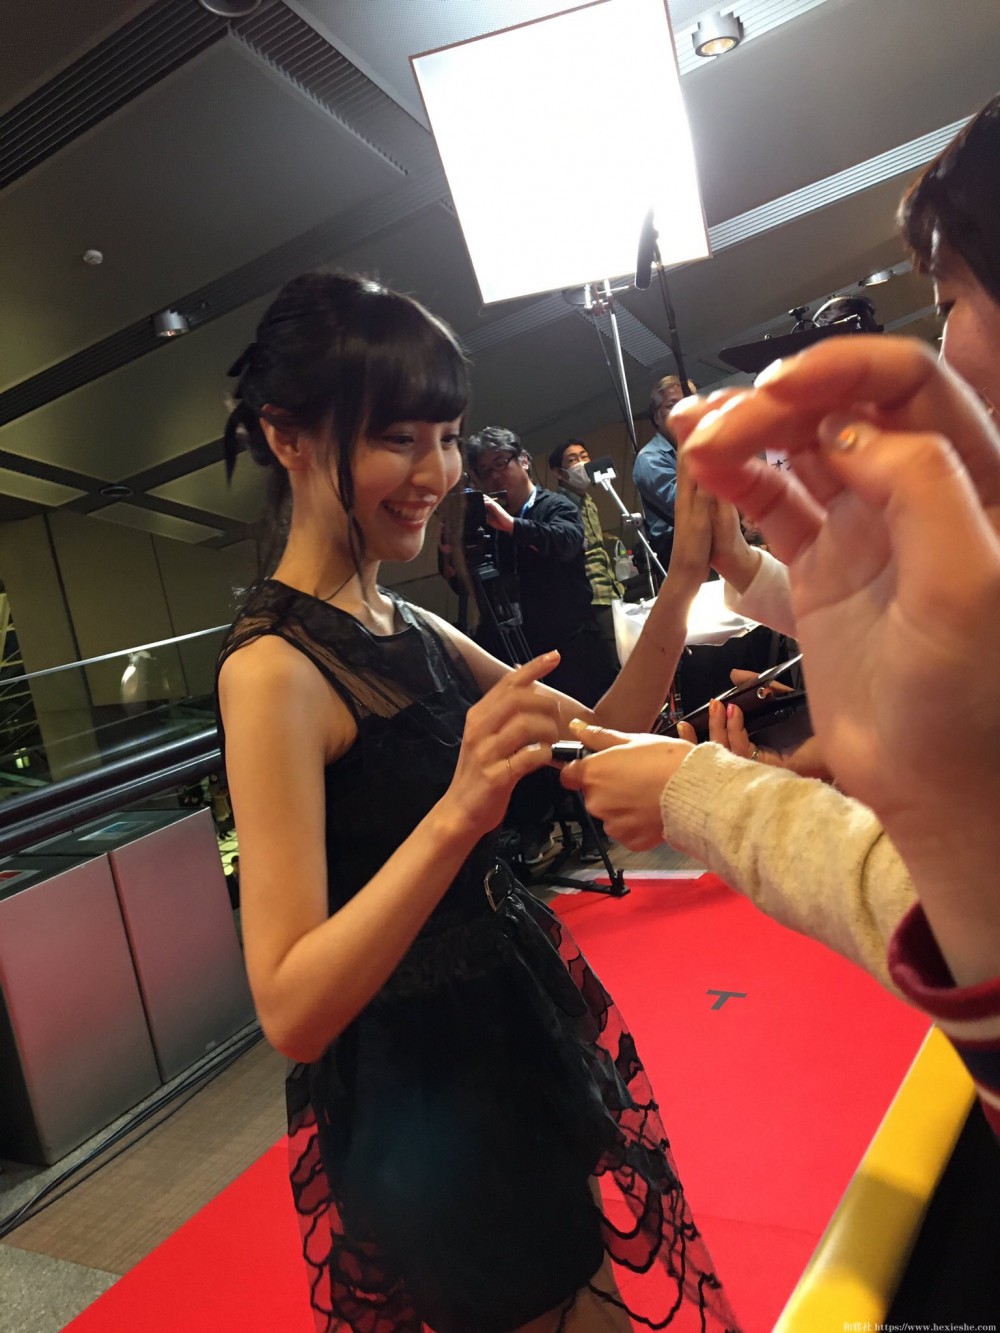 佐仓绫音参与『欢乐好声音』日本首映礼-美人声优走上红地毯